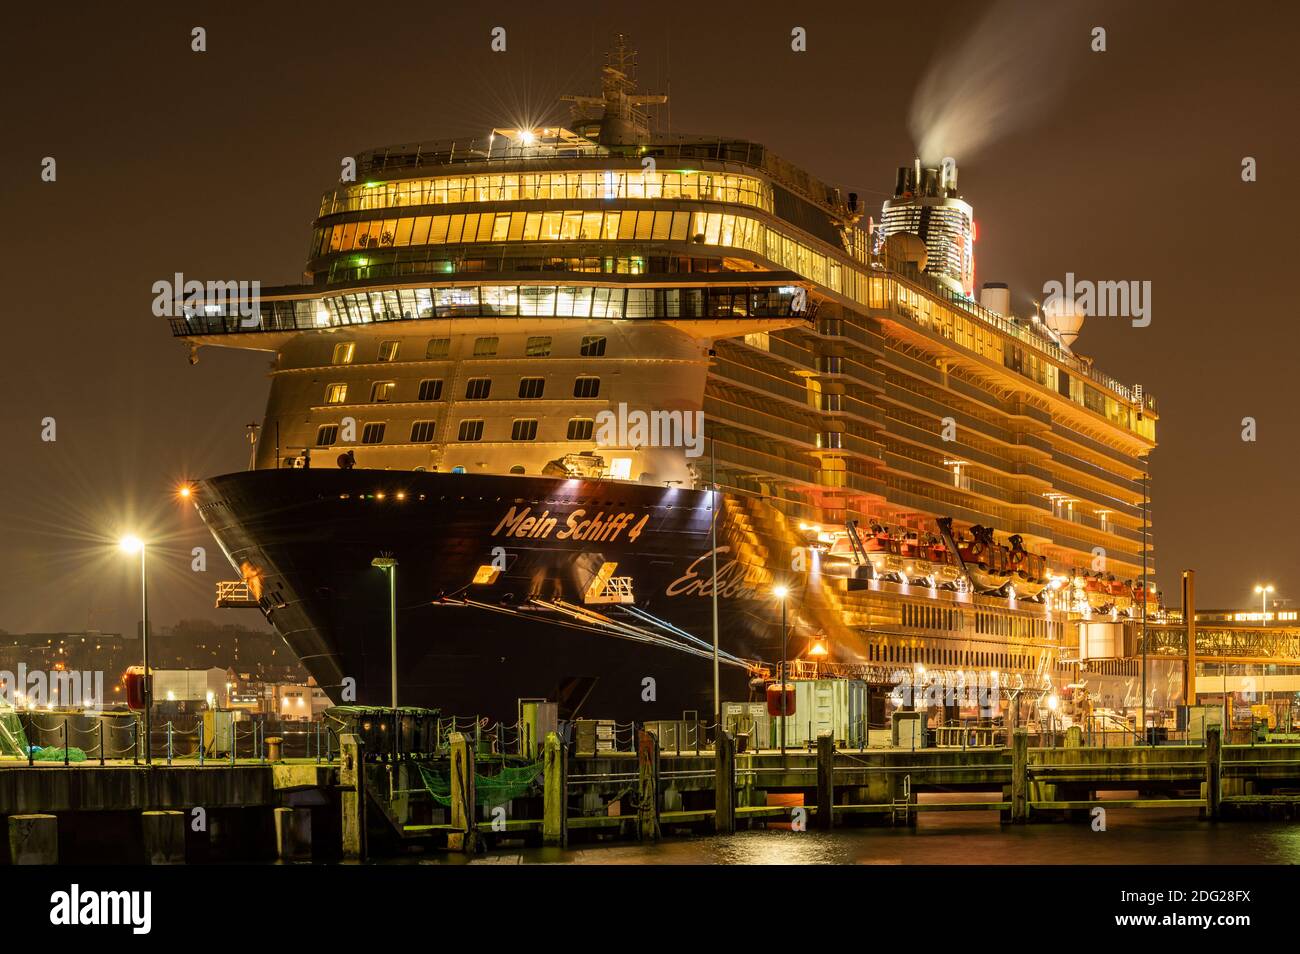 Cruiship Mein Schiff 4 amarré à Ostseekai Cruiseterminal dans le port de Kiel. NightShot Banque D'Images